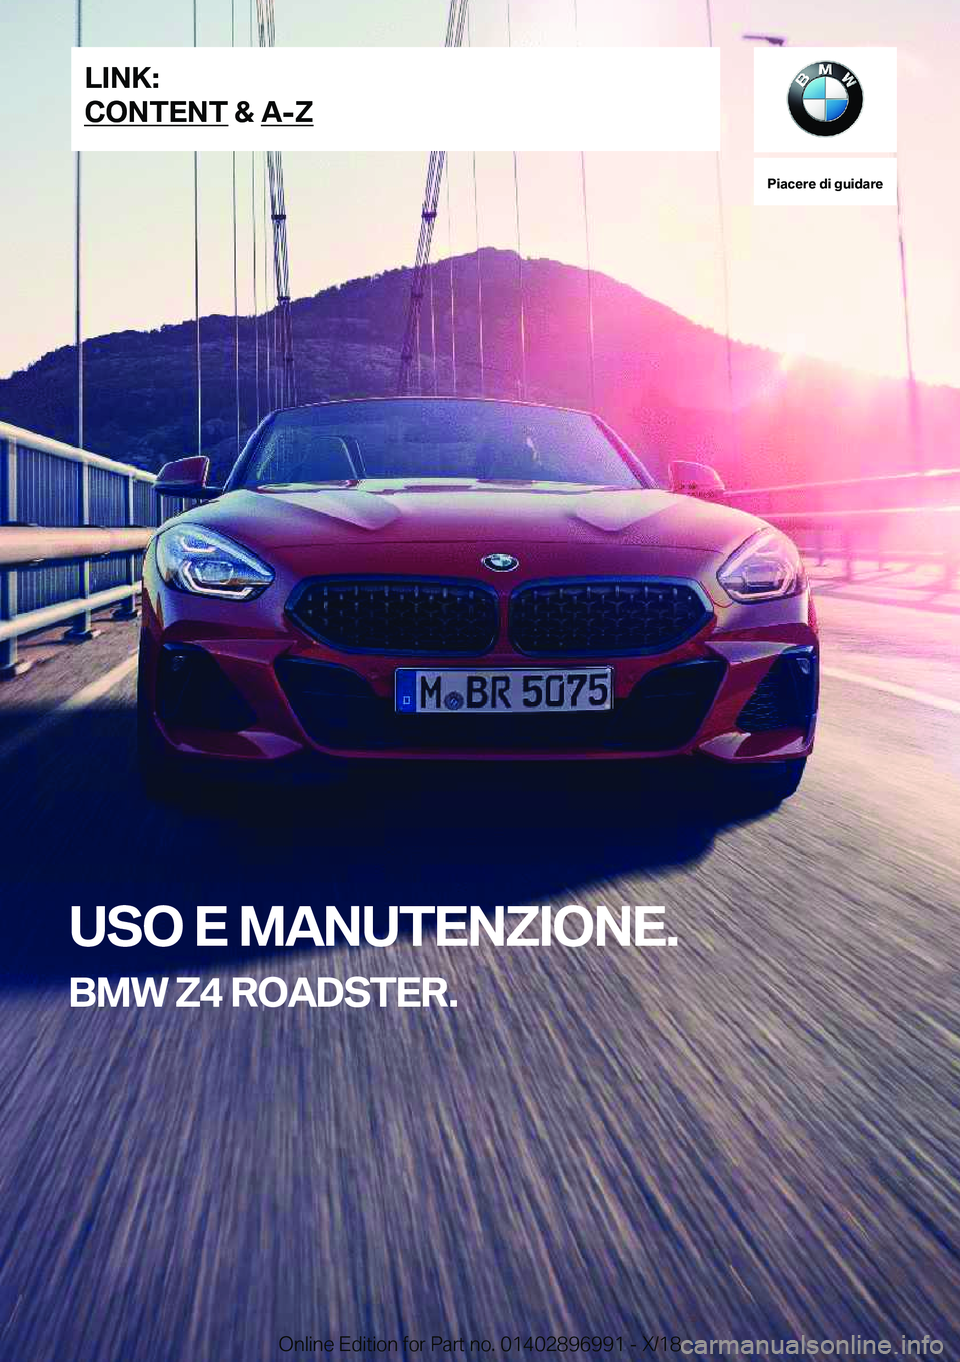 BMW Z4 2019  Libretti Di Uso E manutenzione (in Italian) �P�i�a�c�e�r�e��d�i��g�u�i�d�a�r�e
�U�S�O��E��M�A�N�U�T�E�N�Z�I�O�N�E�.
�B�M�W��Z�4��R�O�A�D�S�T�E�R�.�L�I�N�K�:
�C�O�N�T�E�N�T��&��A�-�Z�O�n�l�i�n�e��E�d�i�t�i�o�n��f�o�r��P�a�r�t��n�o�.�